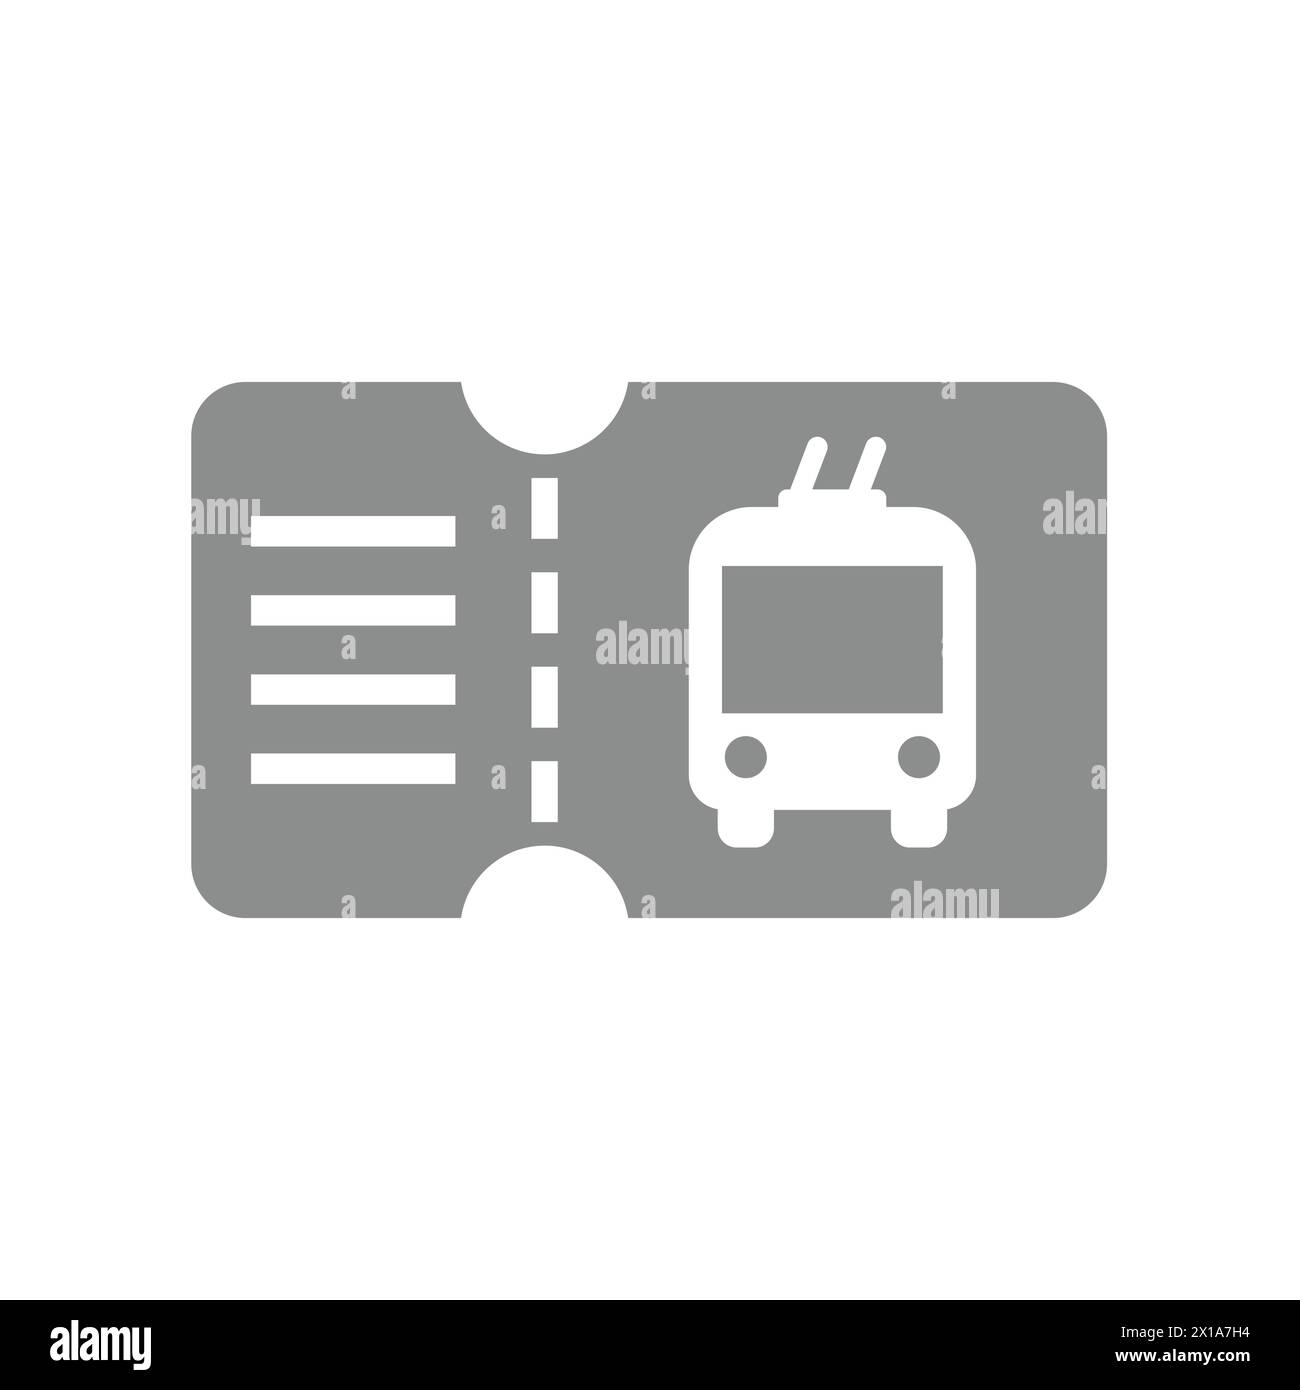 Vettoriale del tram o del tram. Tramcar, icona del trasporto ferroviario. Illustrazione Vettoriale